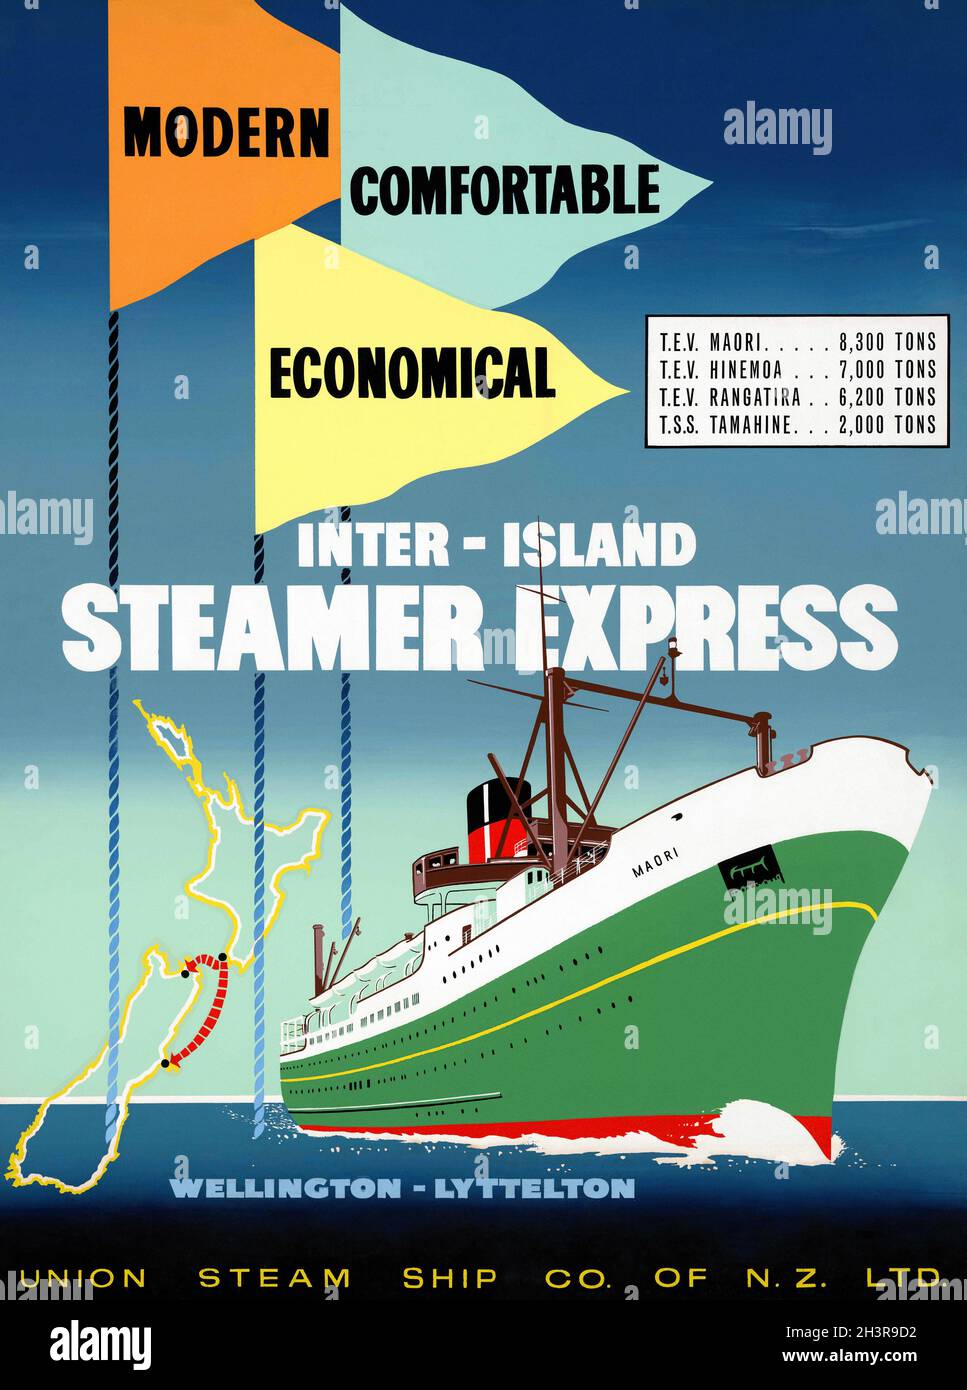 Moderne, confortable, économique.Cuiseur vapeur Inter-Island Express.Wellington - Lyttelton.Artiste inconnu.Affiche ancienne restaurée publiée dans les années 1950 en Nouvelle-Zélande. Banque D'Images